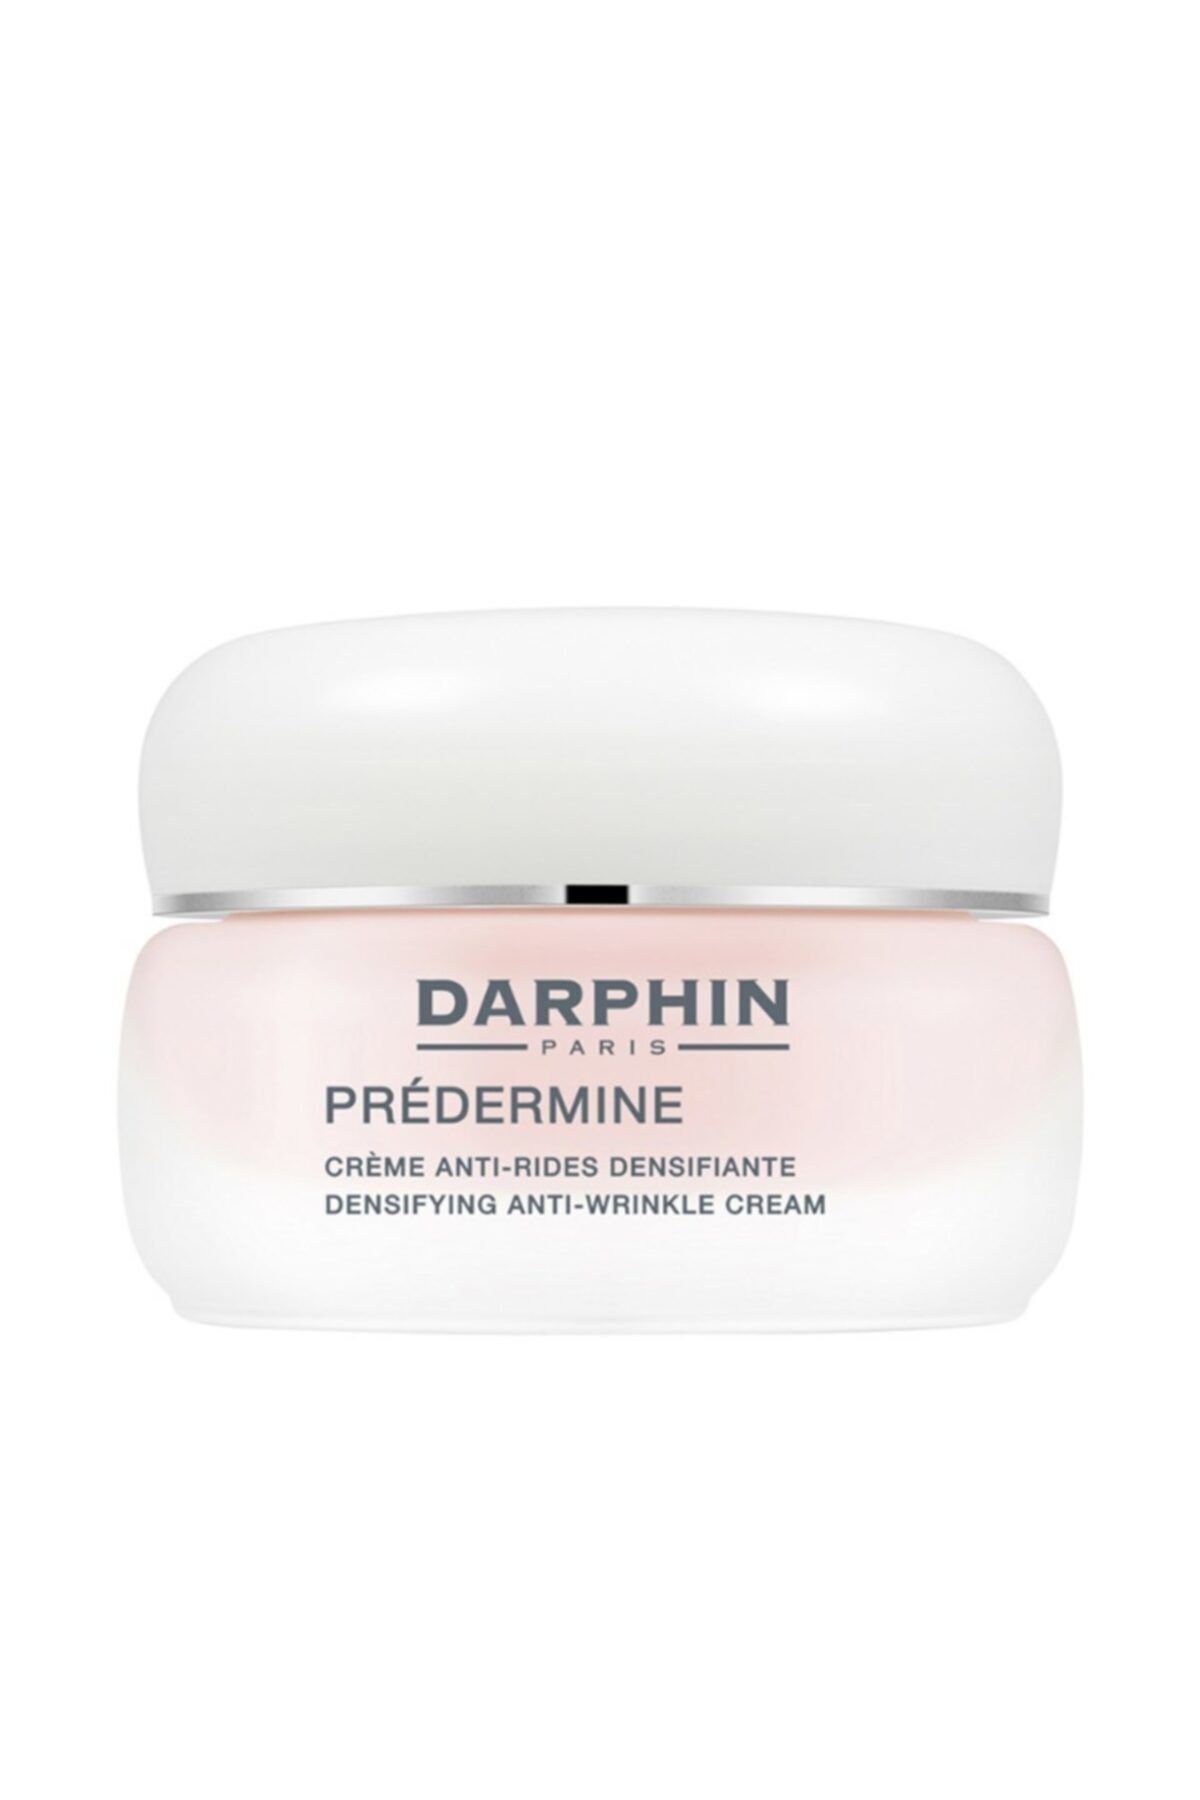 Darphin Kırışıklık Giderici Krem-Predermine Densifying Anti-wrinkle Cream-Kuru Ciltler 50 ml 882381035051